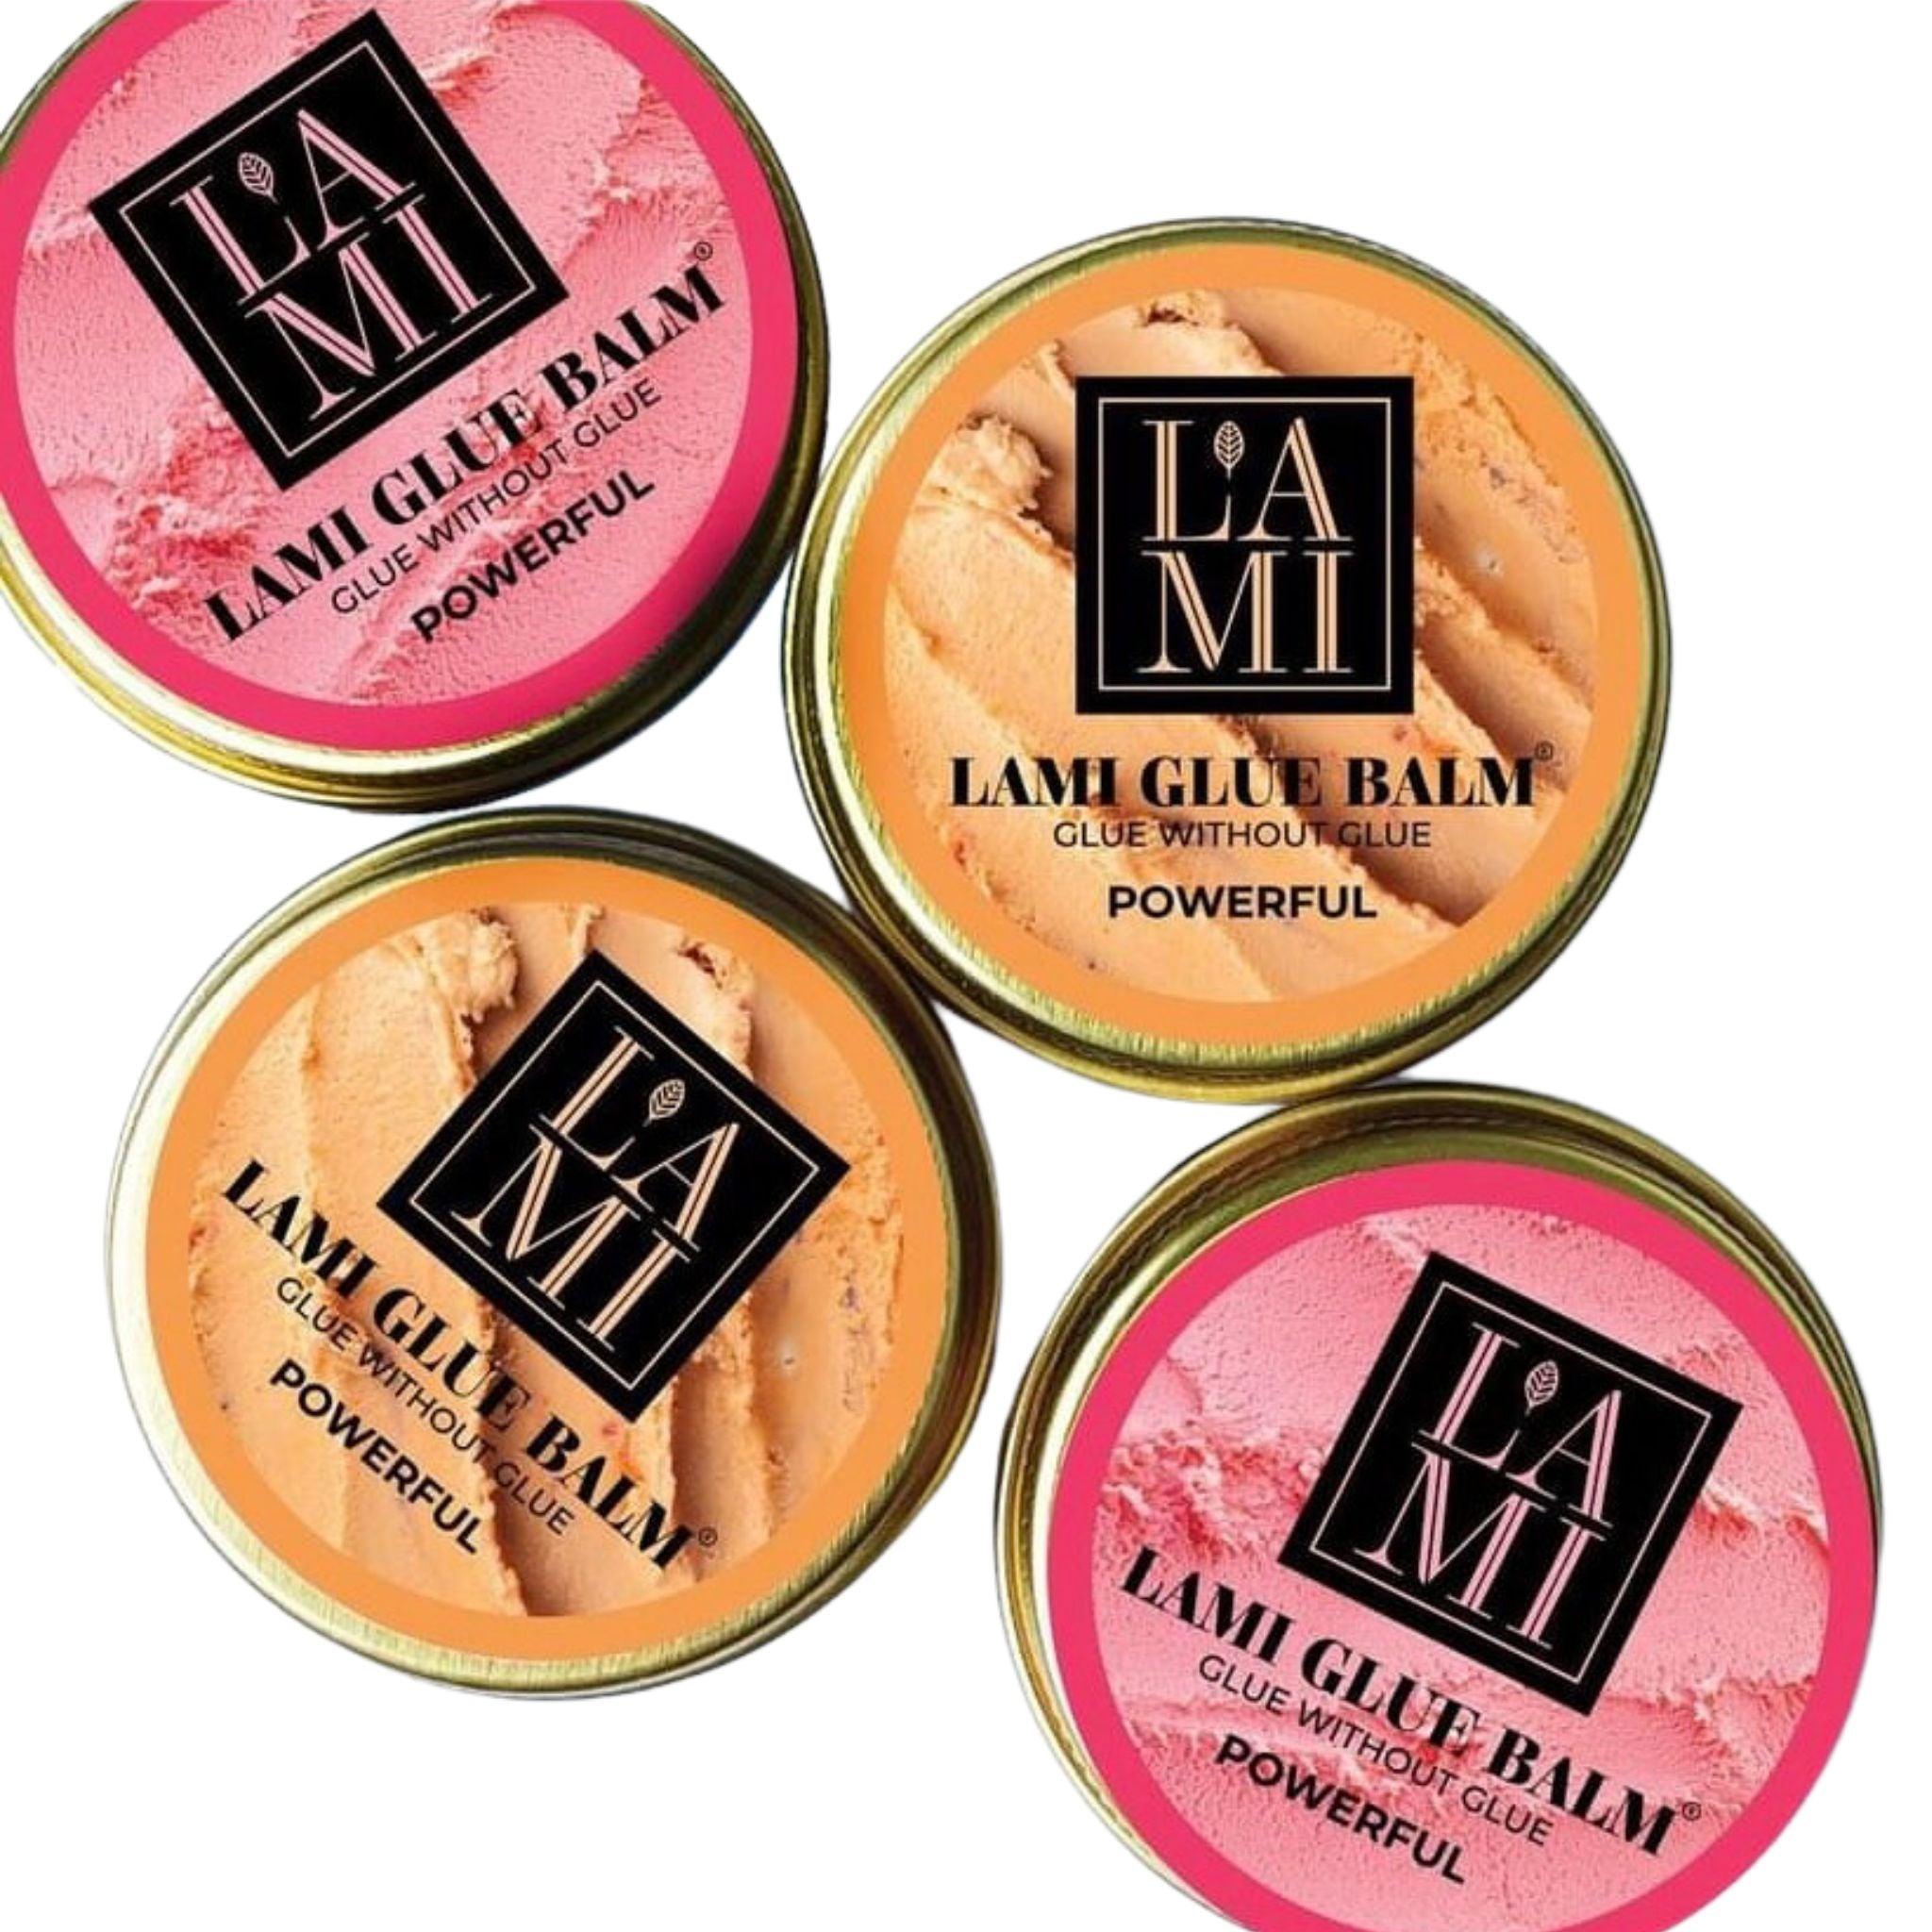 Lami Lashes Glue Balm Powerful